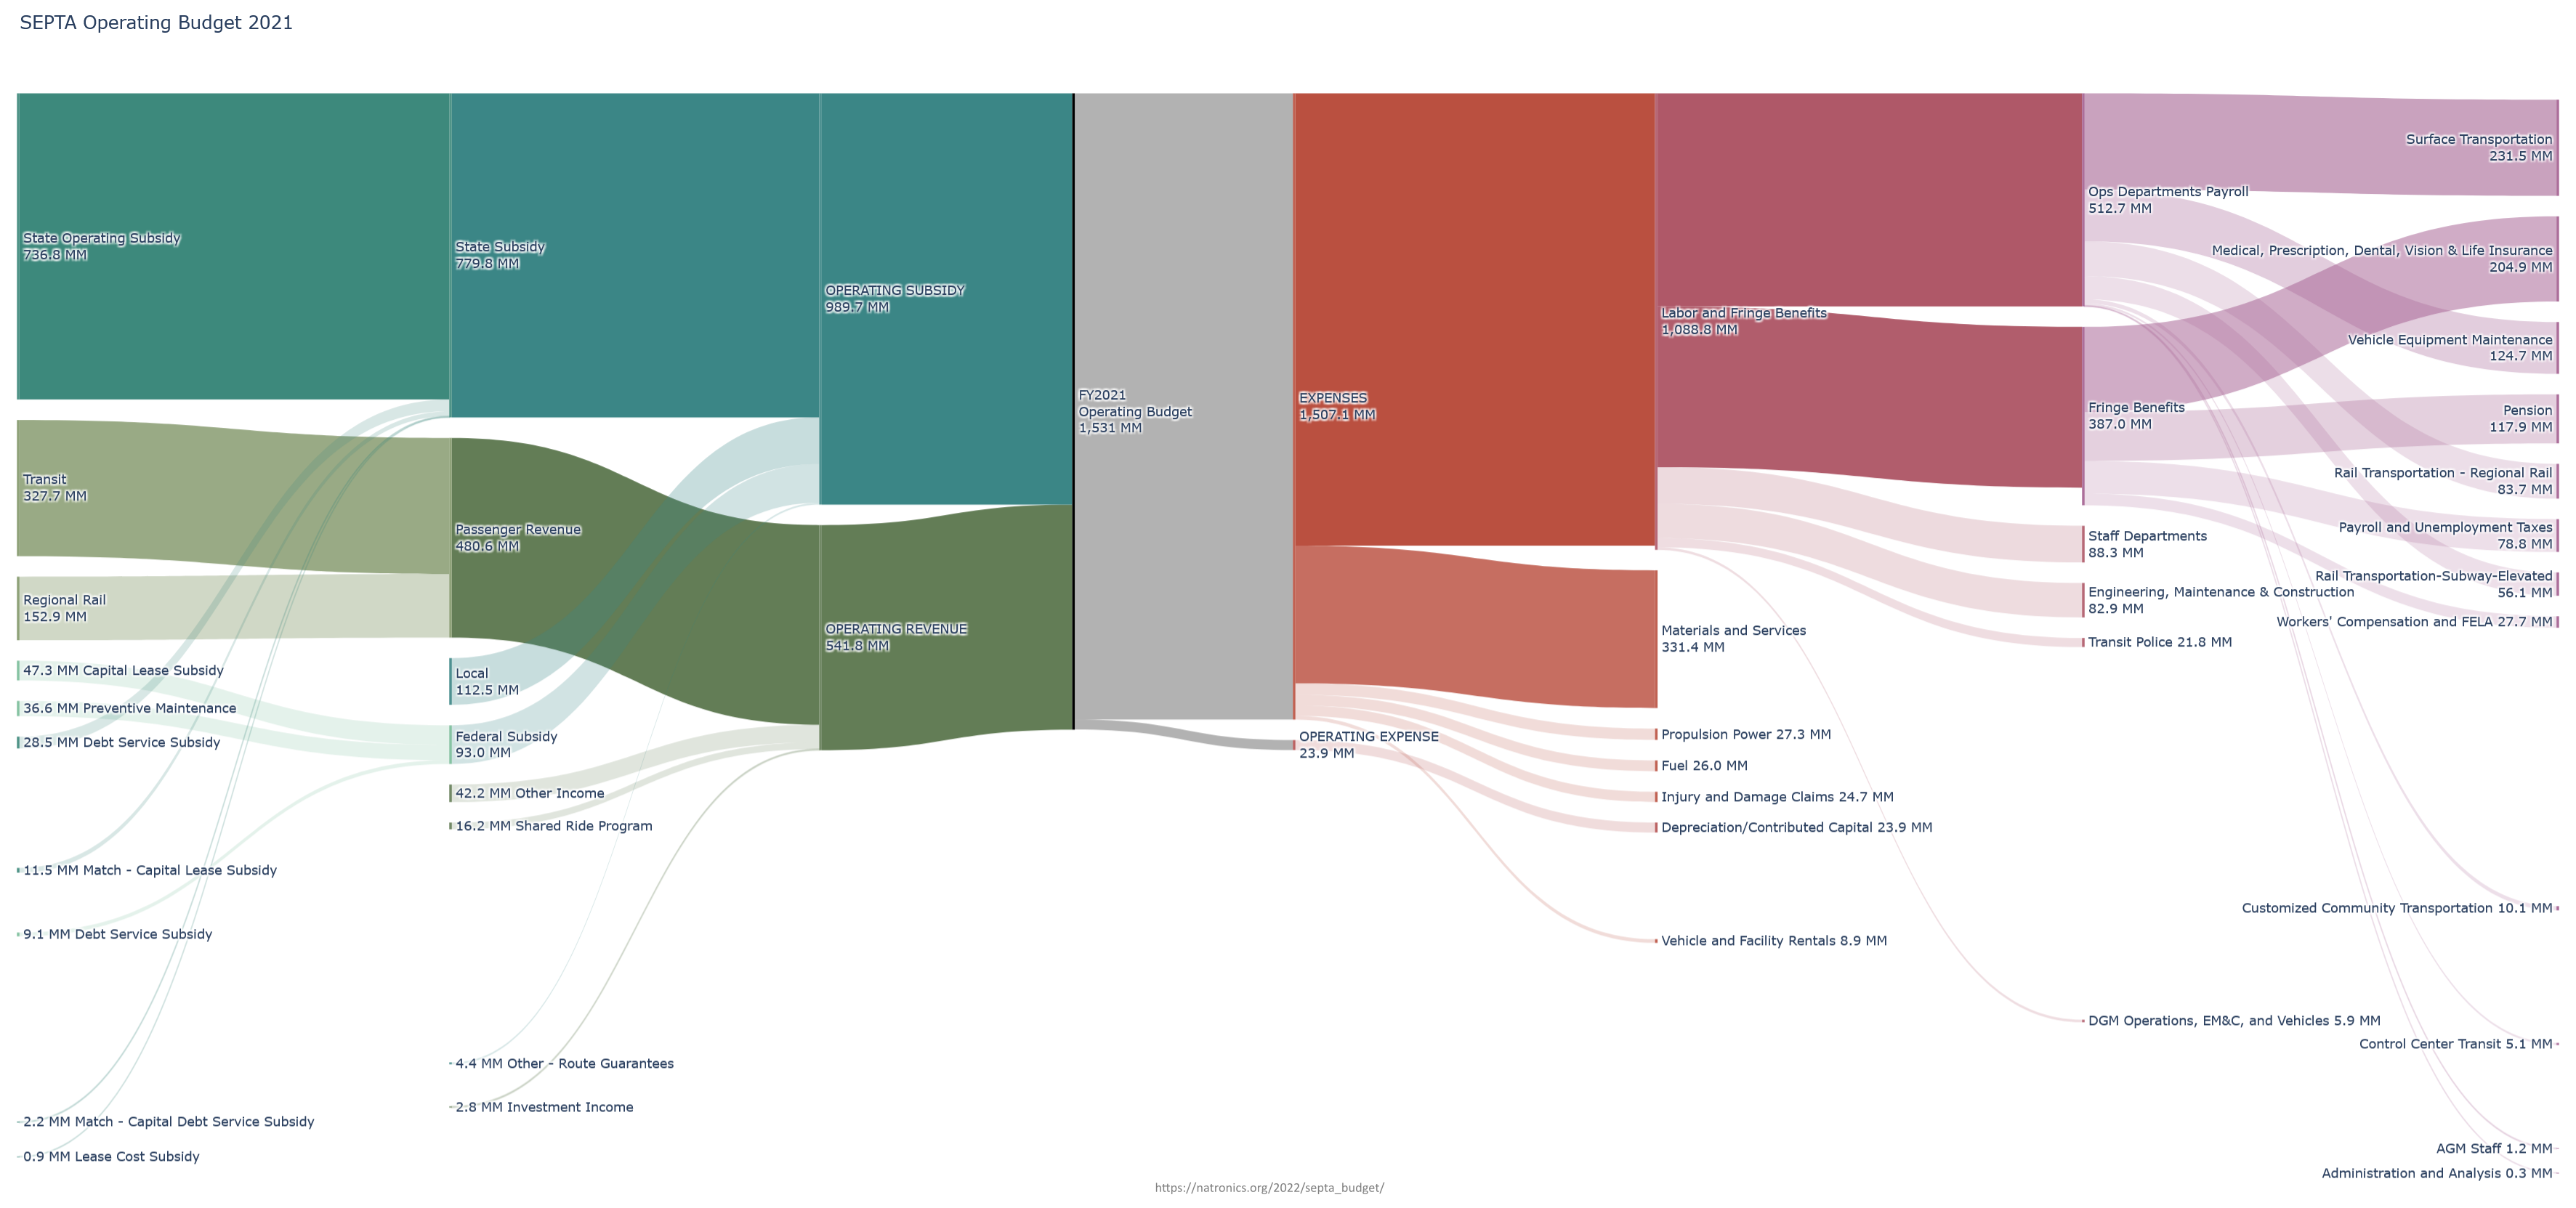 Sankey diagram breaking down SEPTA 2021 Budget numbers by various catagories